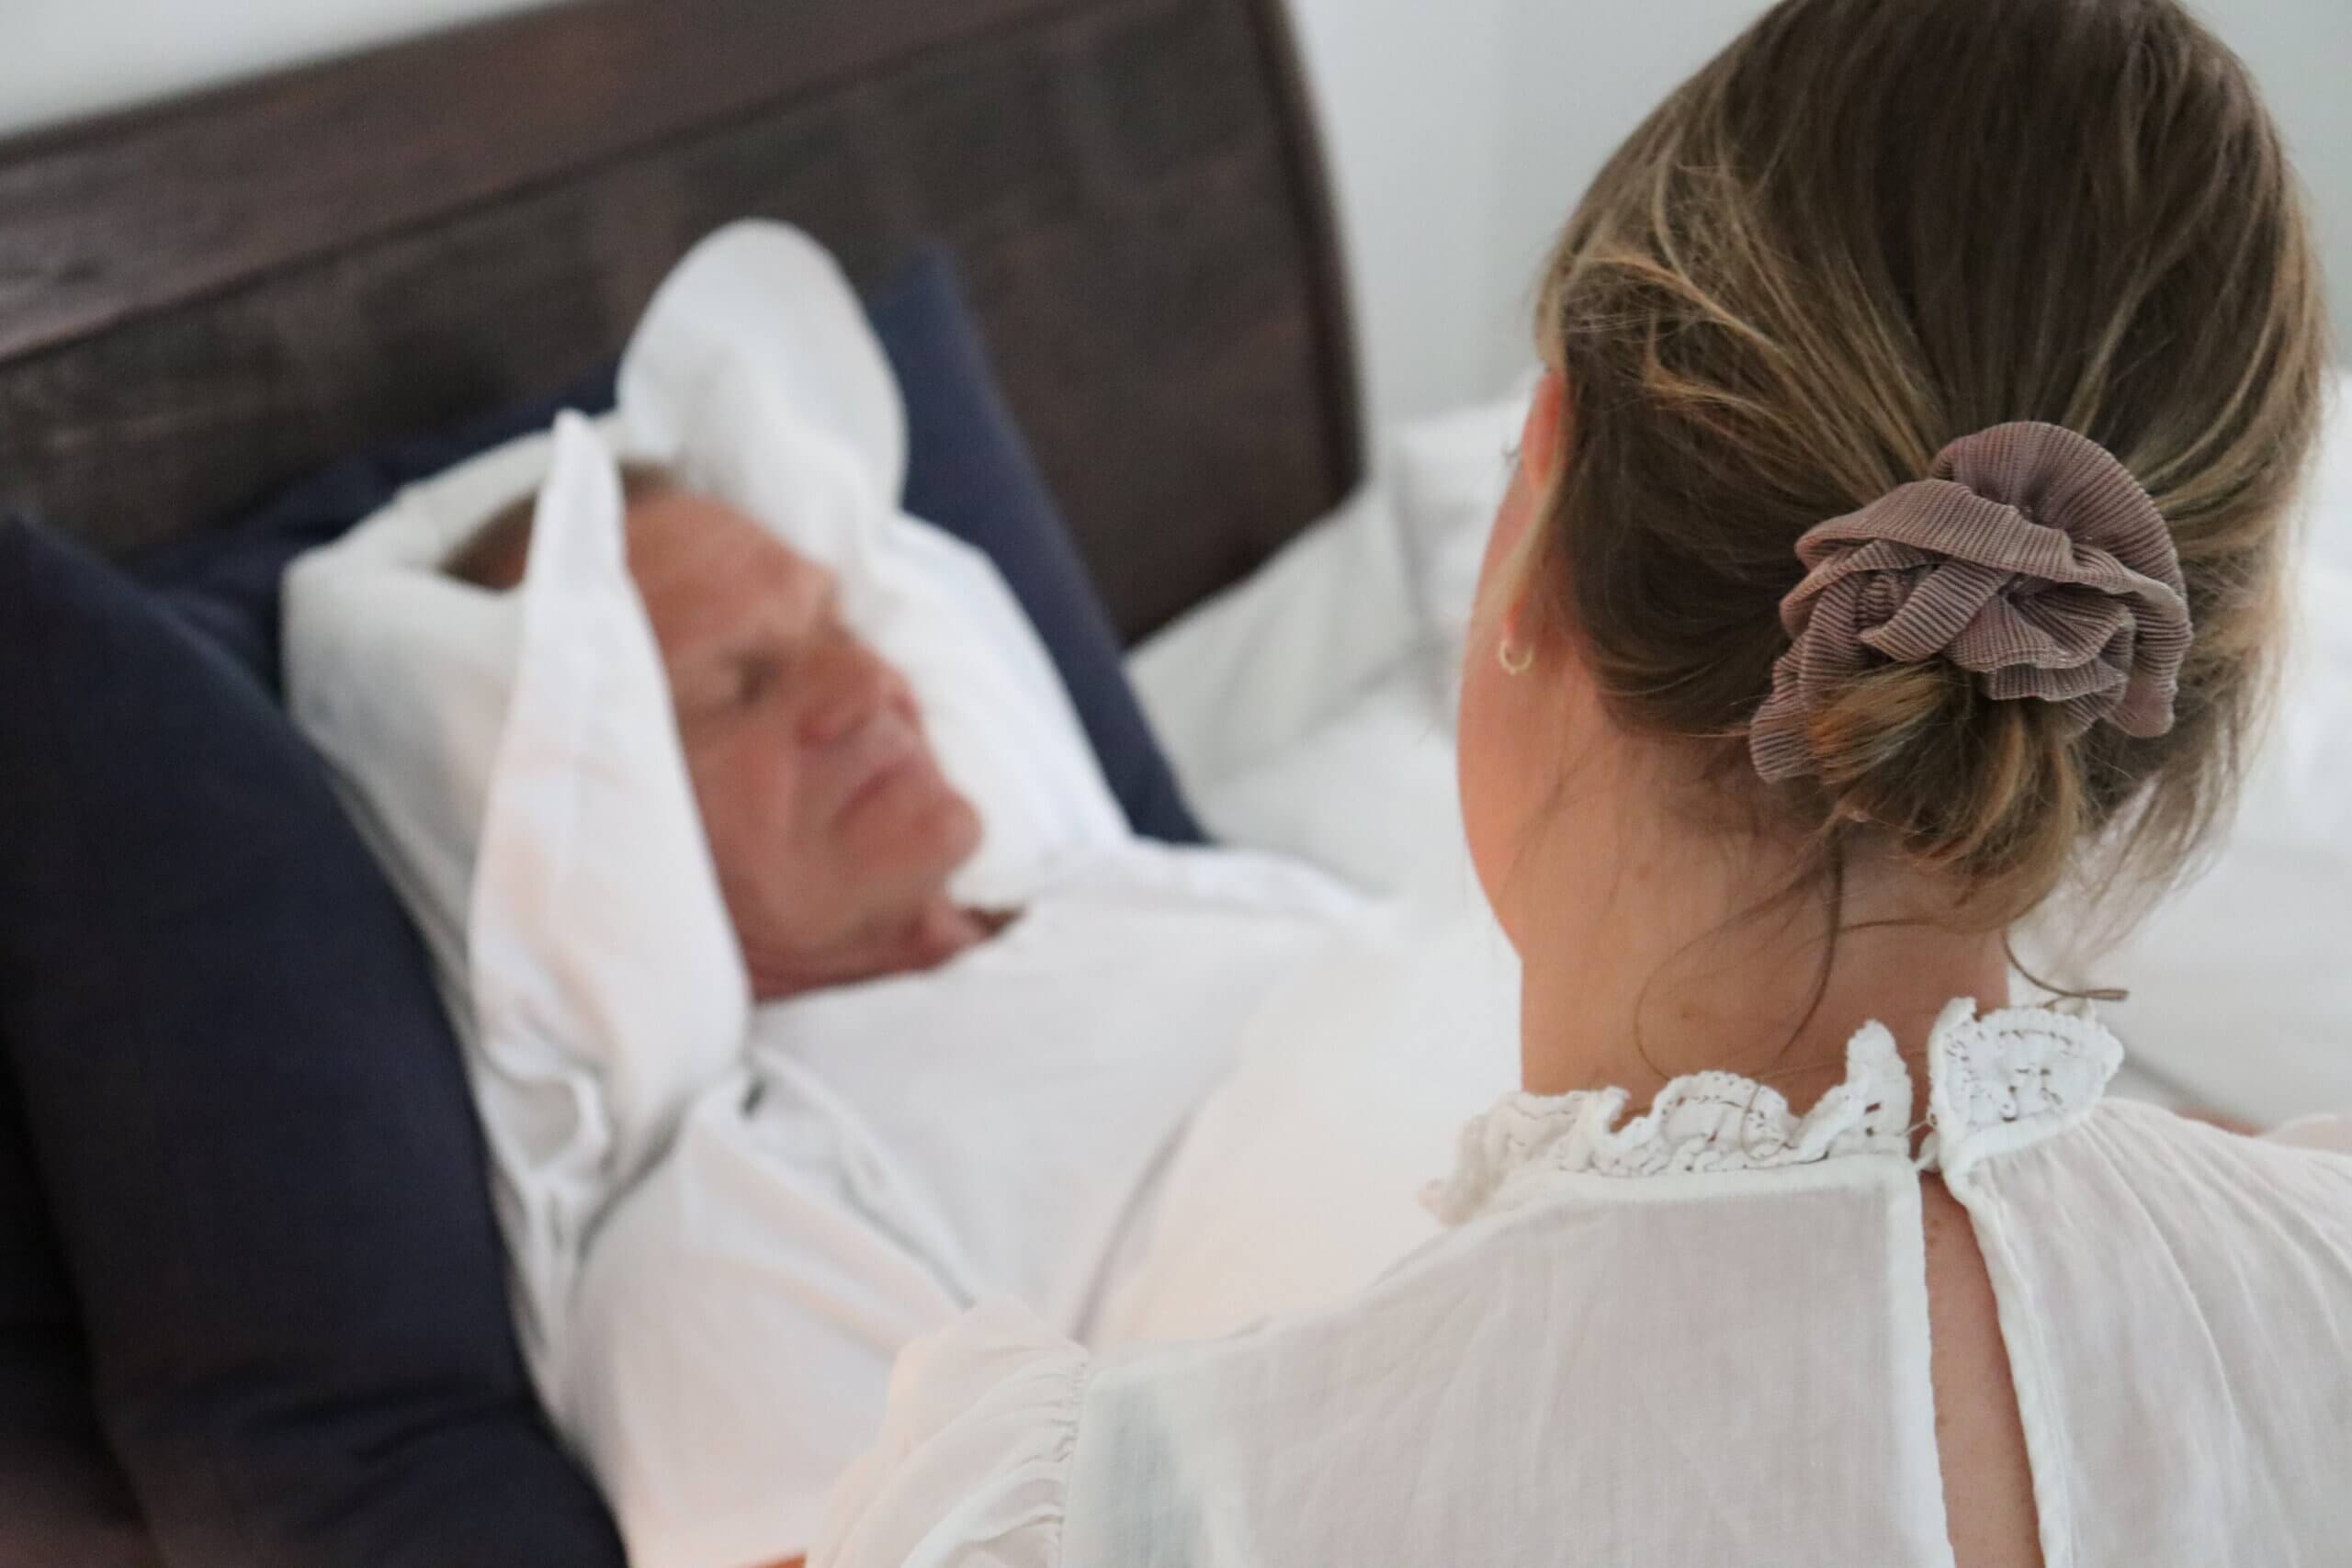 ældre patient ligger i seng privat sygepleje